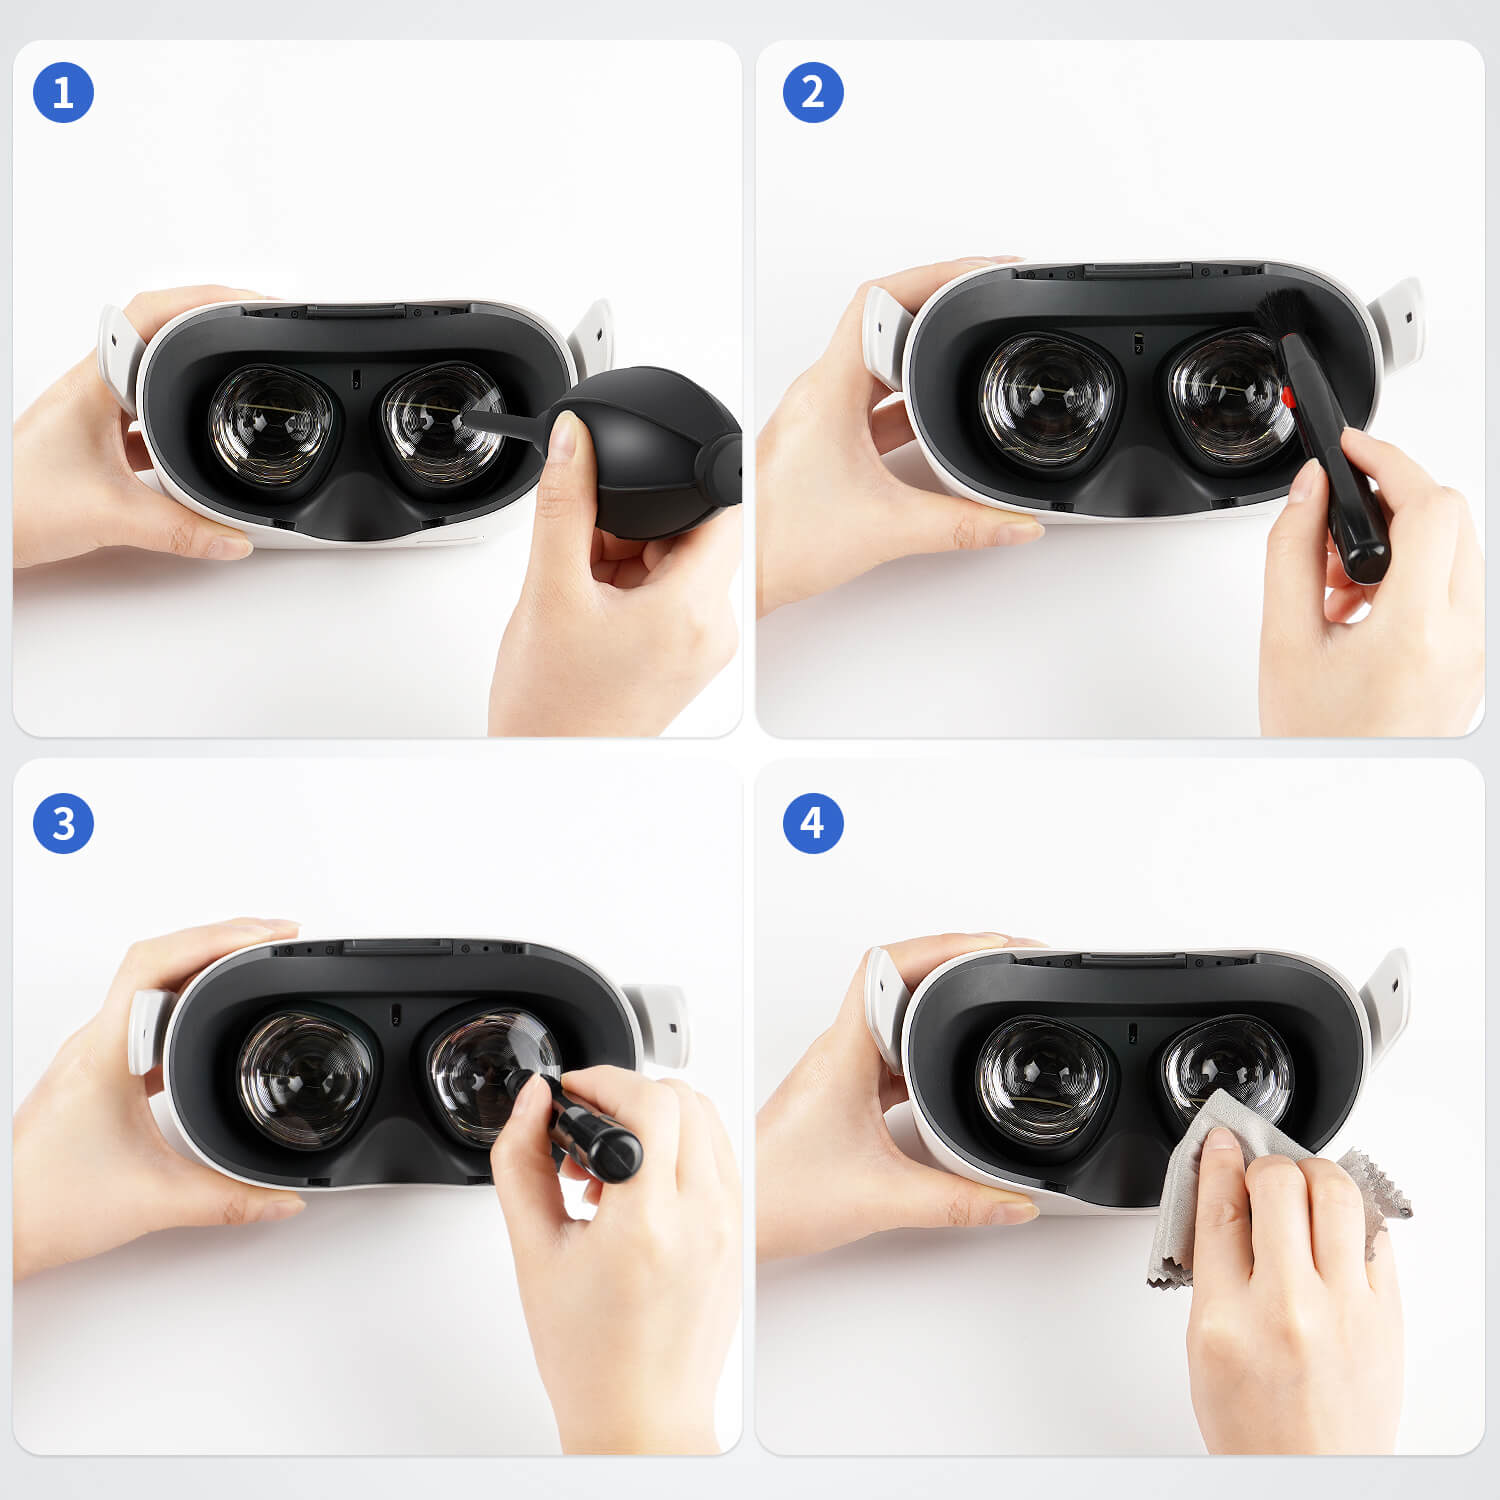 ZyberVR Virtual Reality Headset Lenses Cleaner Kit